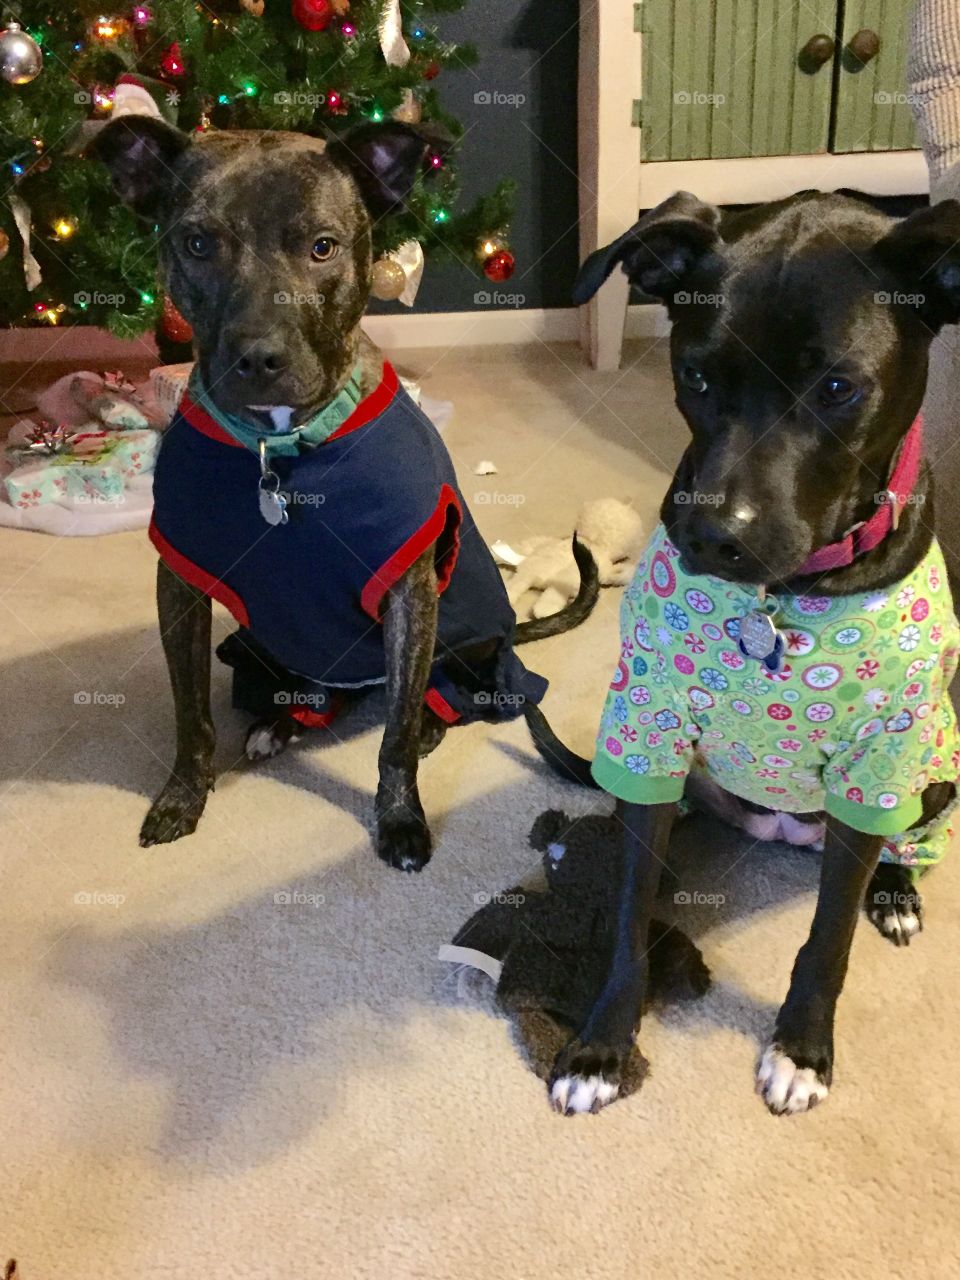 Puppies in their Christmas pajamas